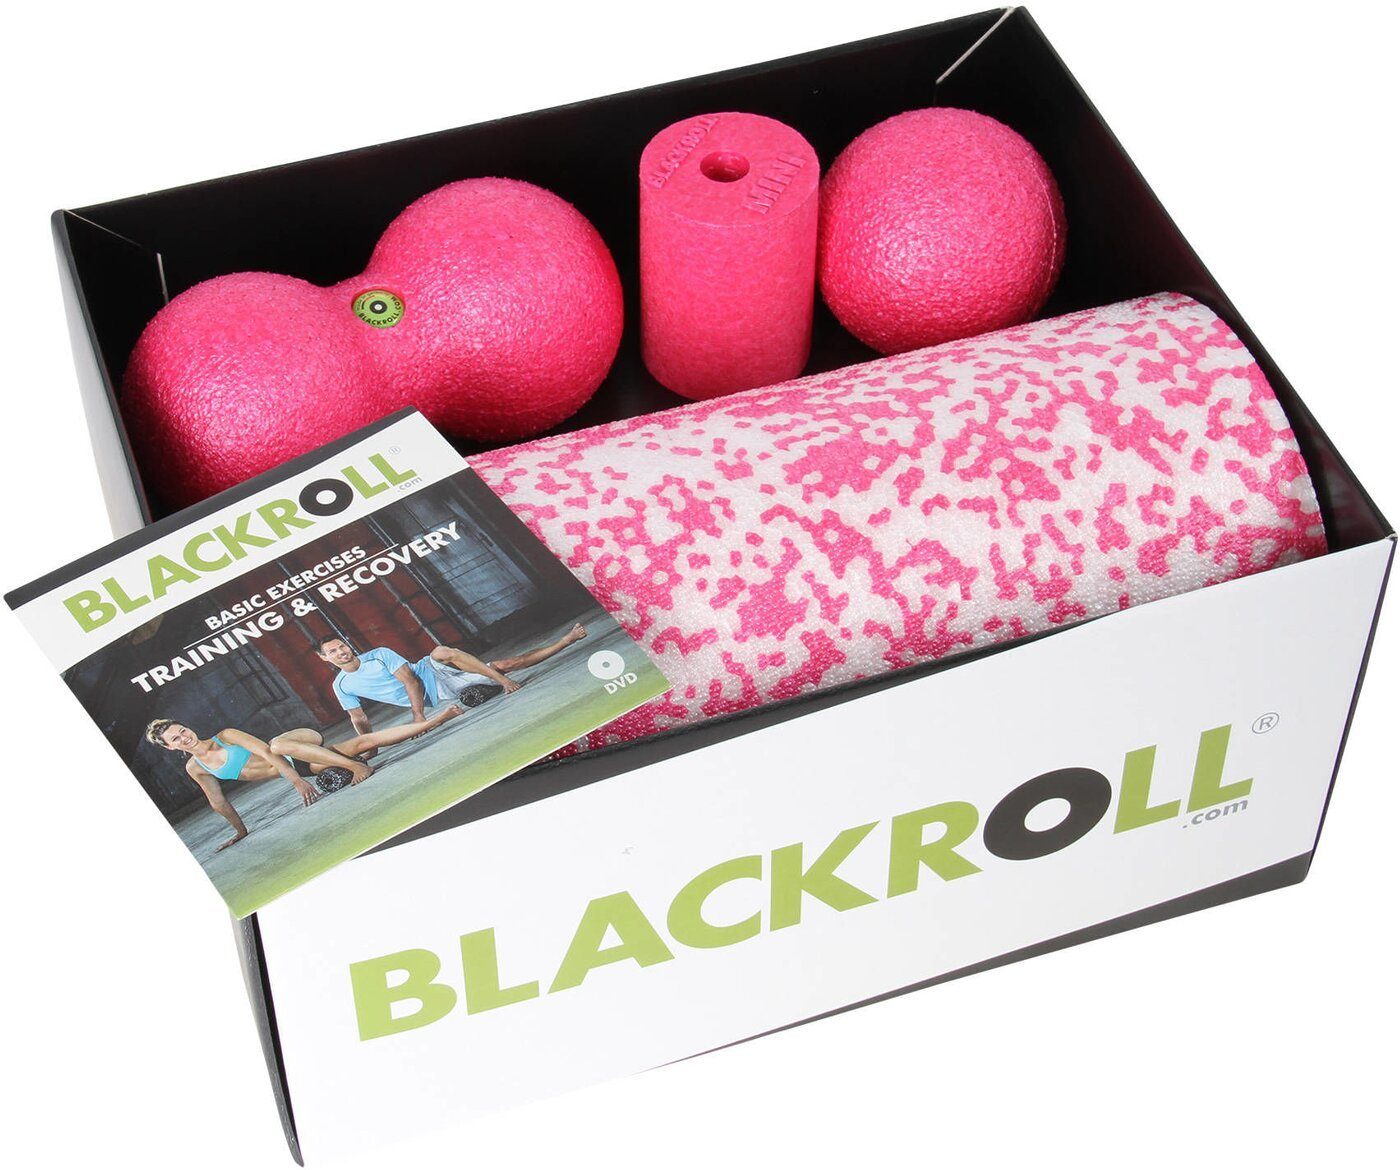 Blackroll Massagerolle BLACKROLL(R) incl. BMPK, MEDPKC, BLACKBOX - pink BBPK08C, MED - PINK